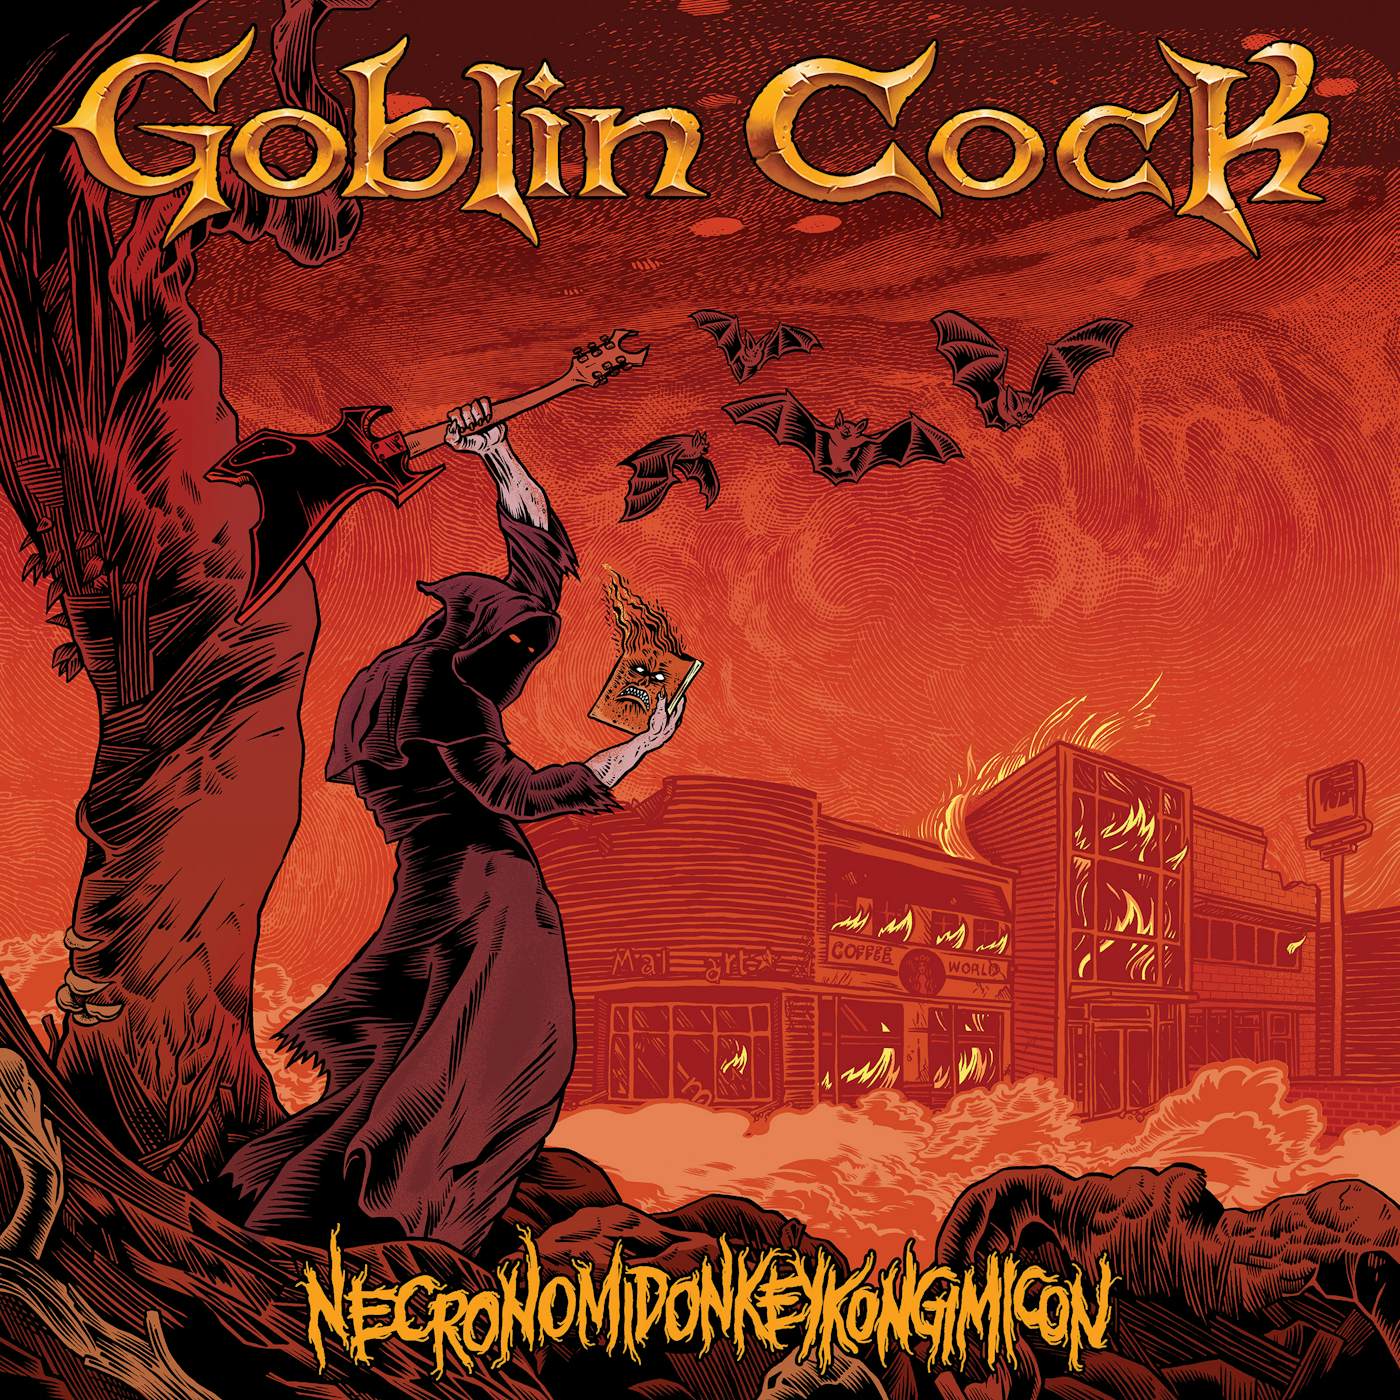 Goblin Cock NECRONOMIDONKEYKONGIMICON CD